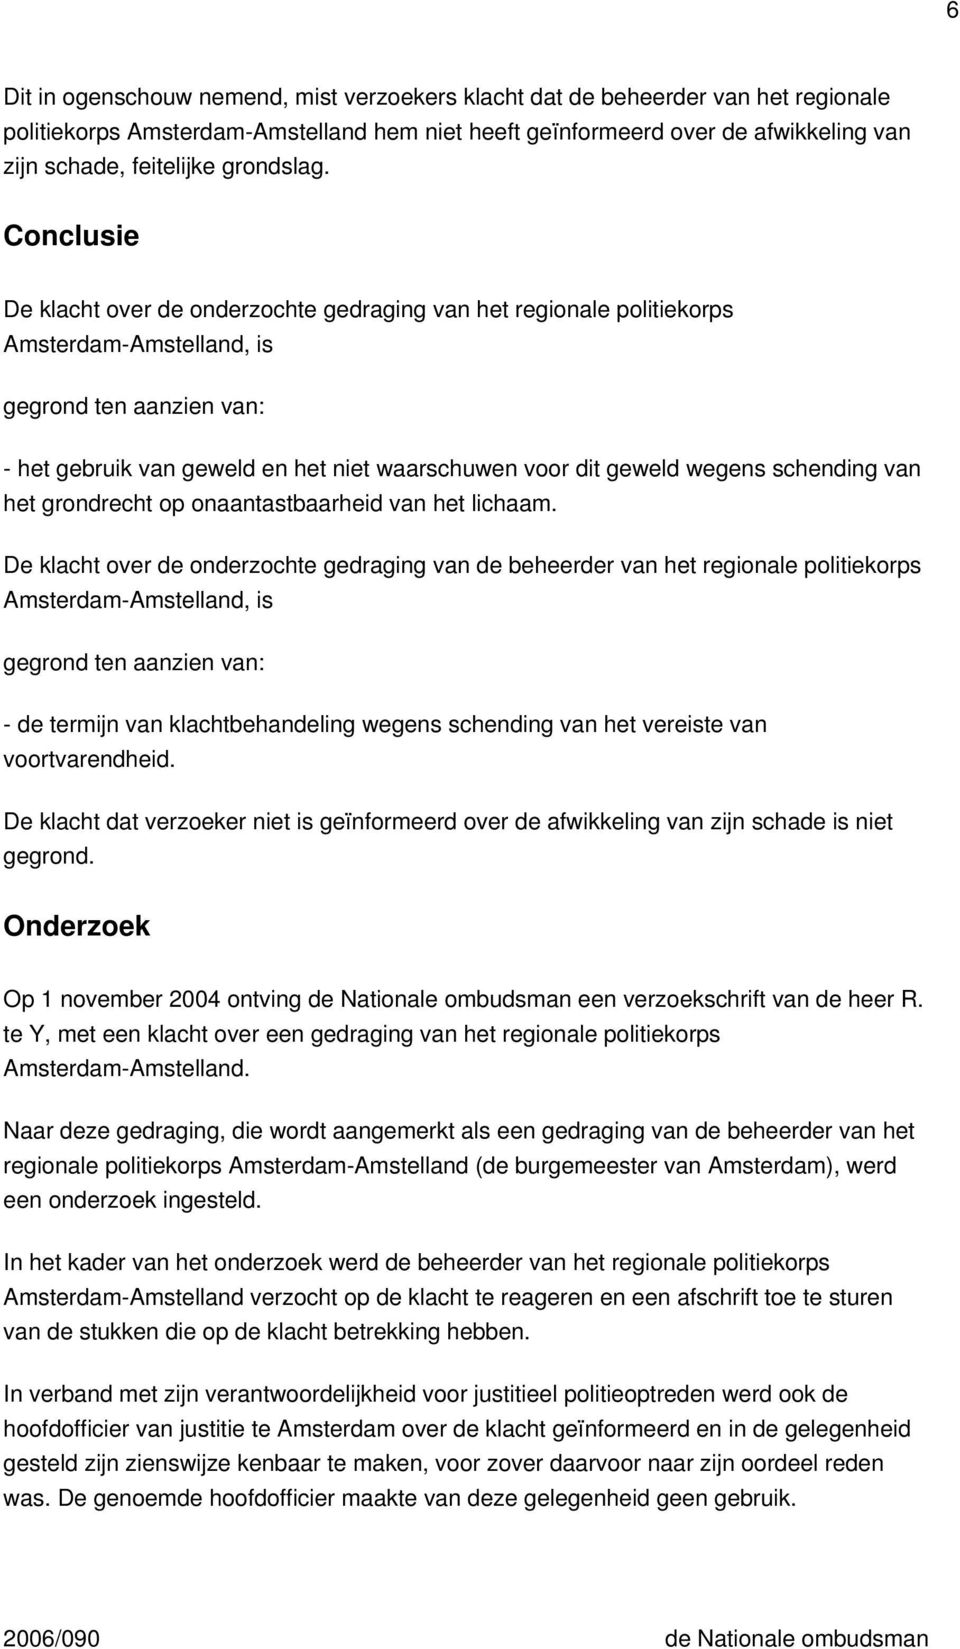 Conclusie De klacht over de onderzochte gedraging van het regionale politiekorps Amsterdam-Amstelland, is gegrond ten aanzien van: - het gebruik van geweld en het niet waarschuwen voor dit geweld